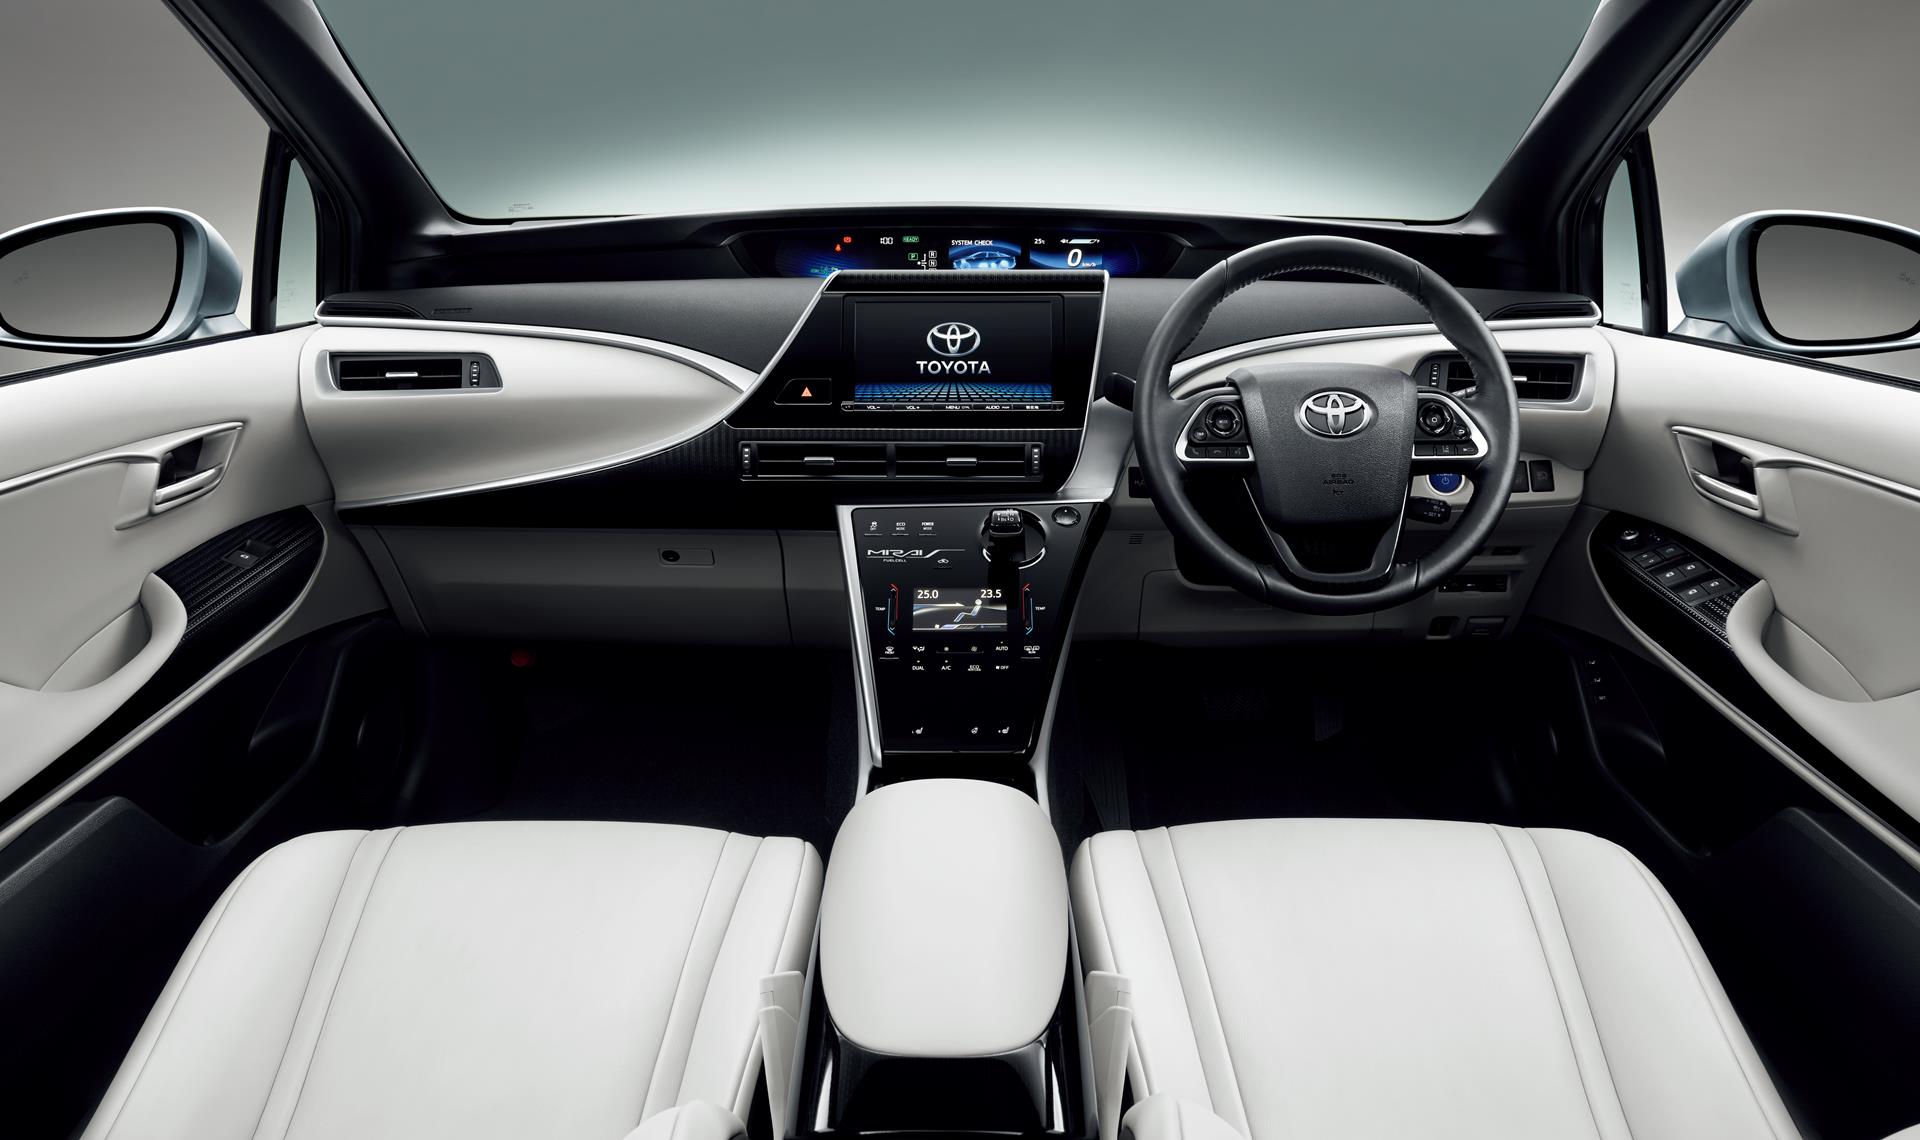 Toyota Mirai fuel cell sedan interior (Warm White)